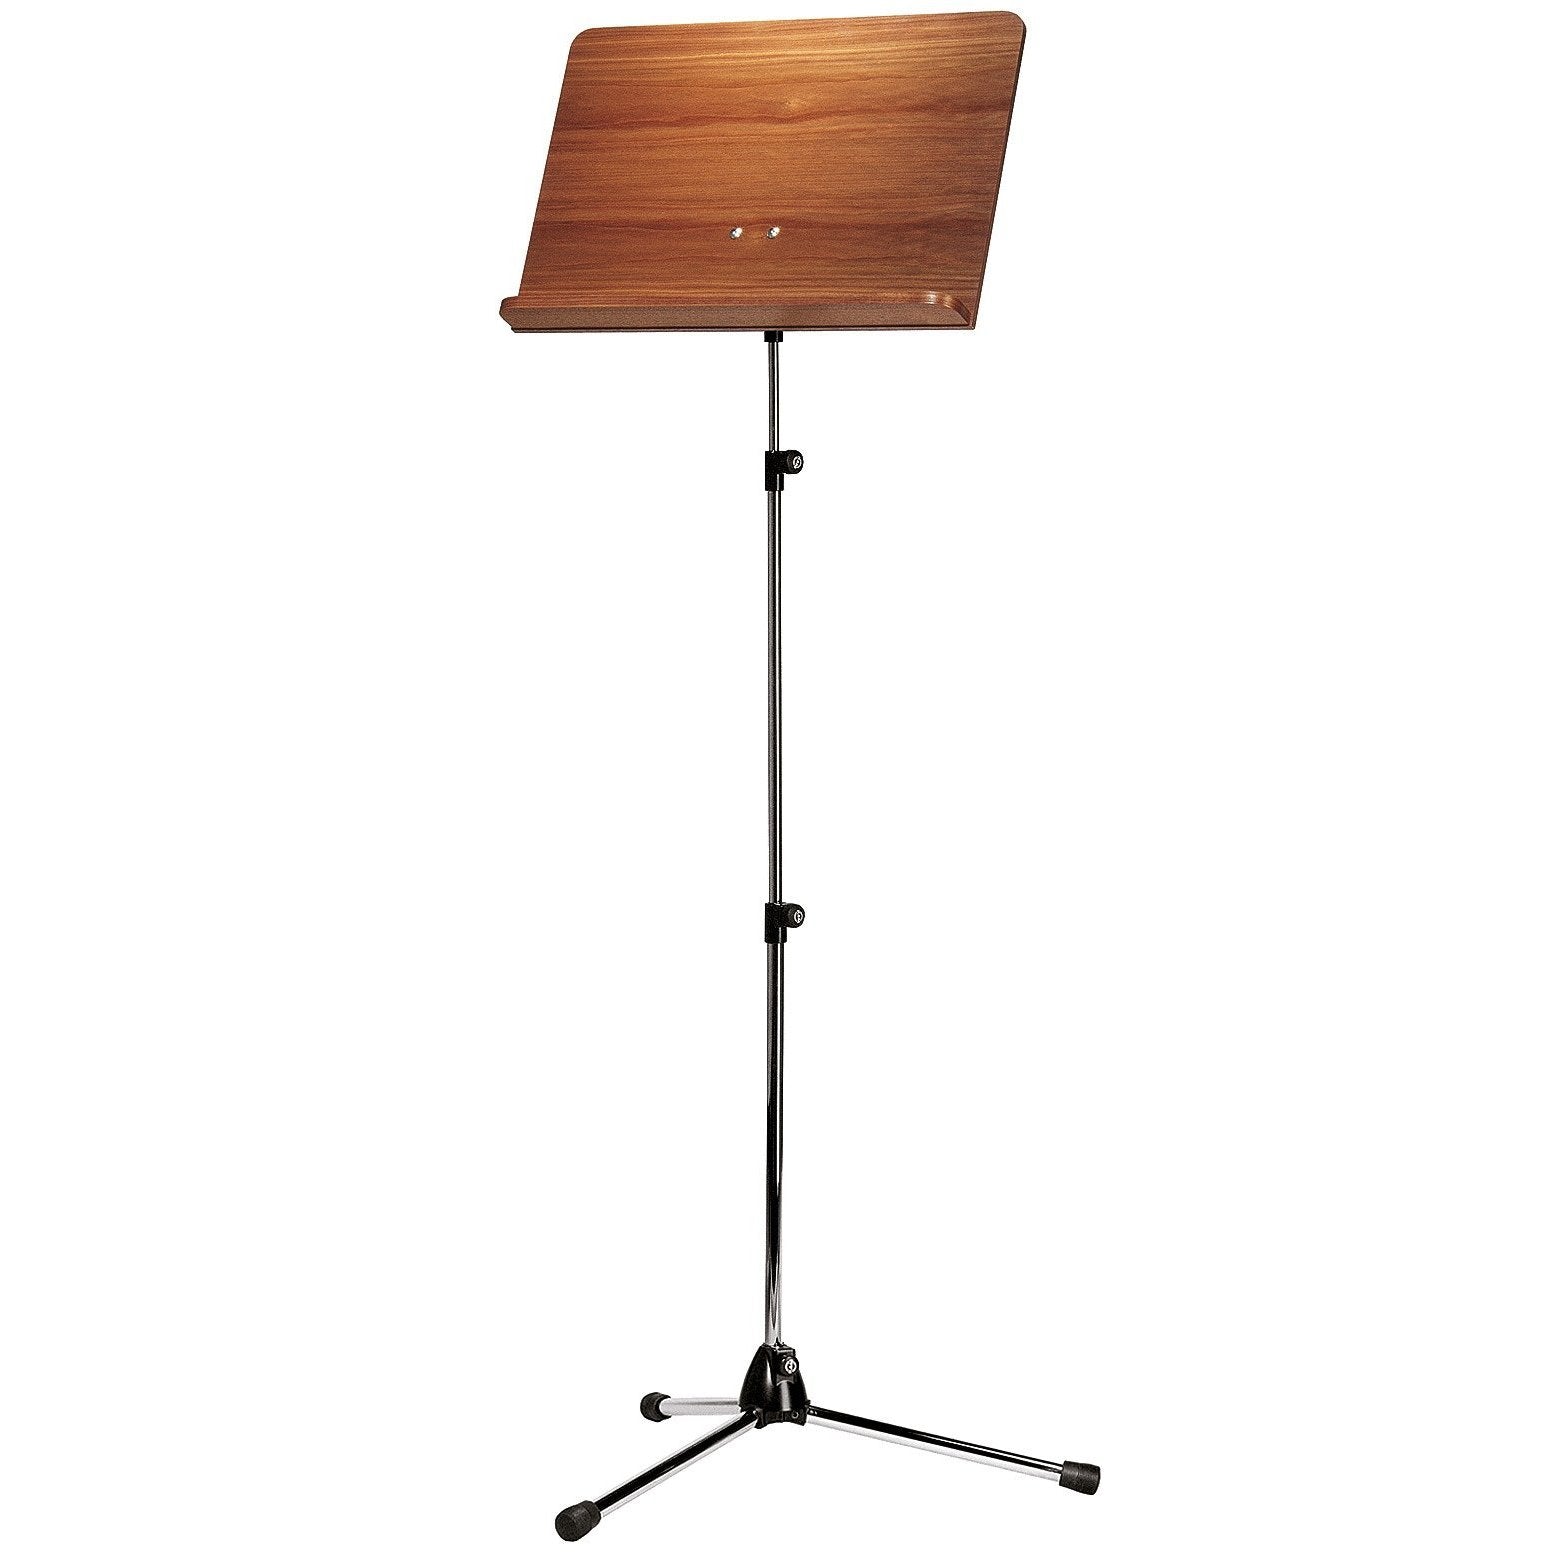 KÃ¶nig & Meyer - 118/4 Topline Orchestra Music Stands-Music Stand-KÃ¶nig & Meyer-Nickel Stand with Walnut Wooden Desk-Music Elements